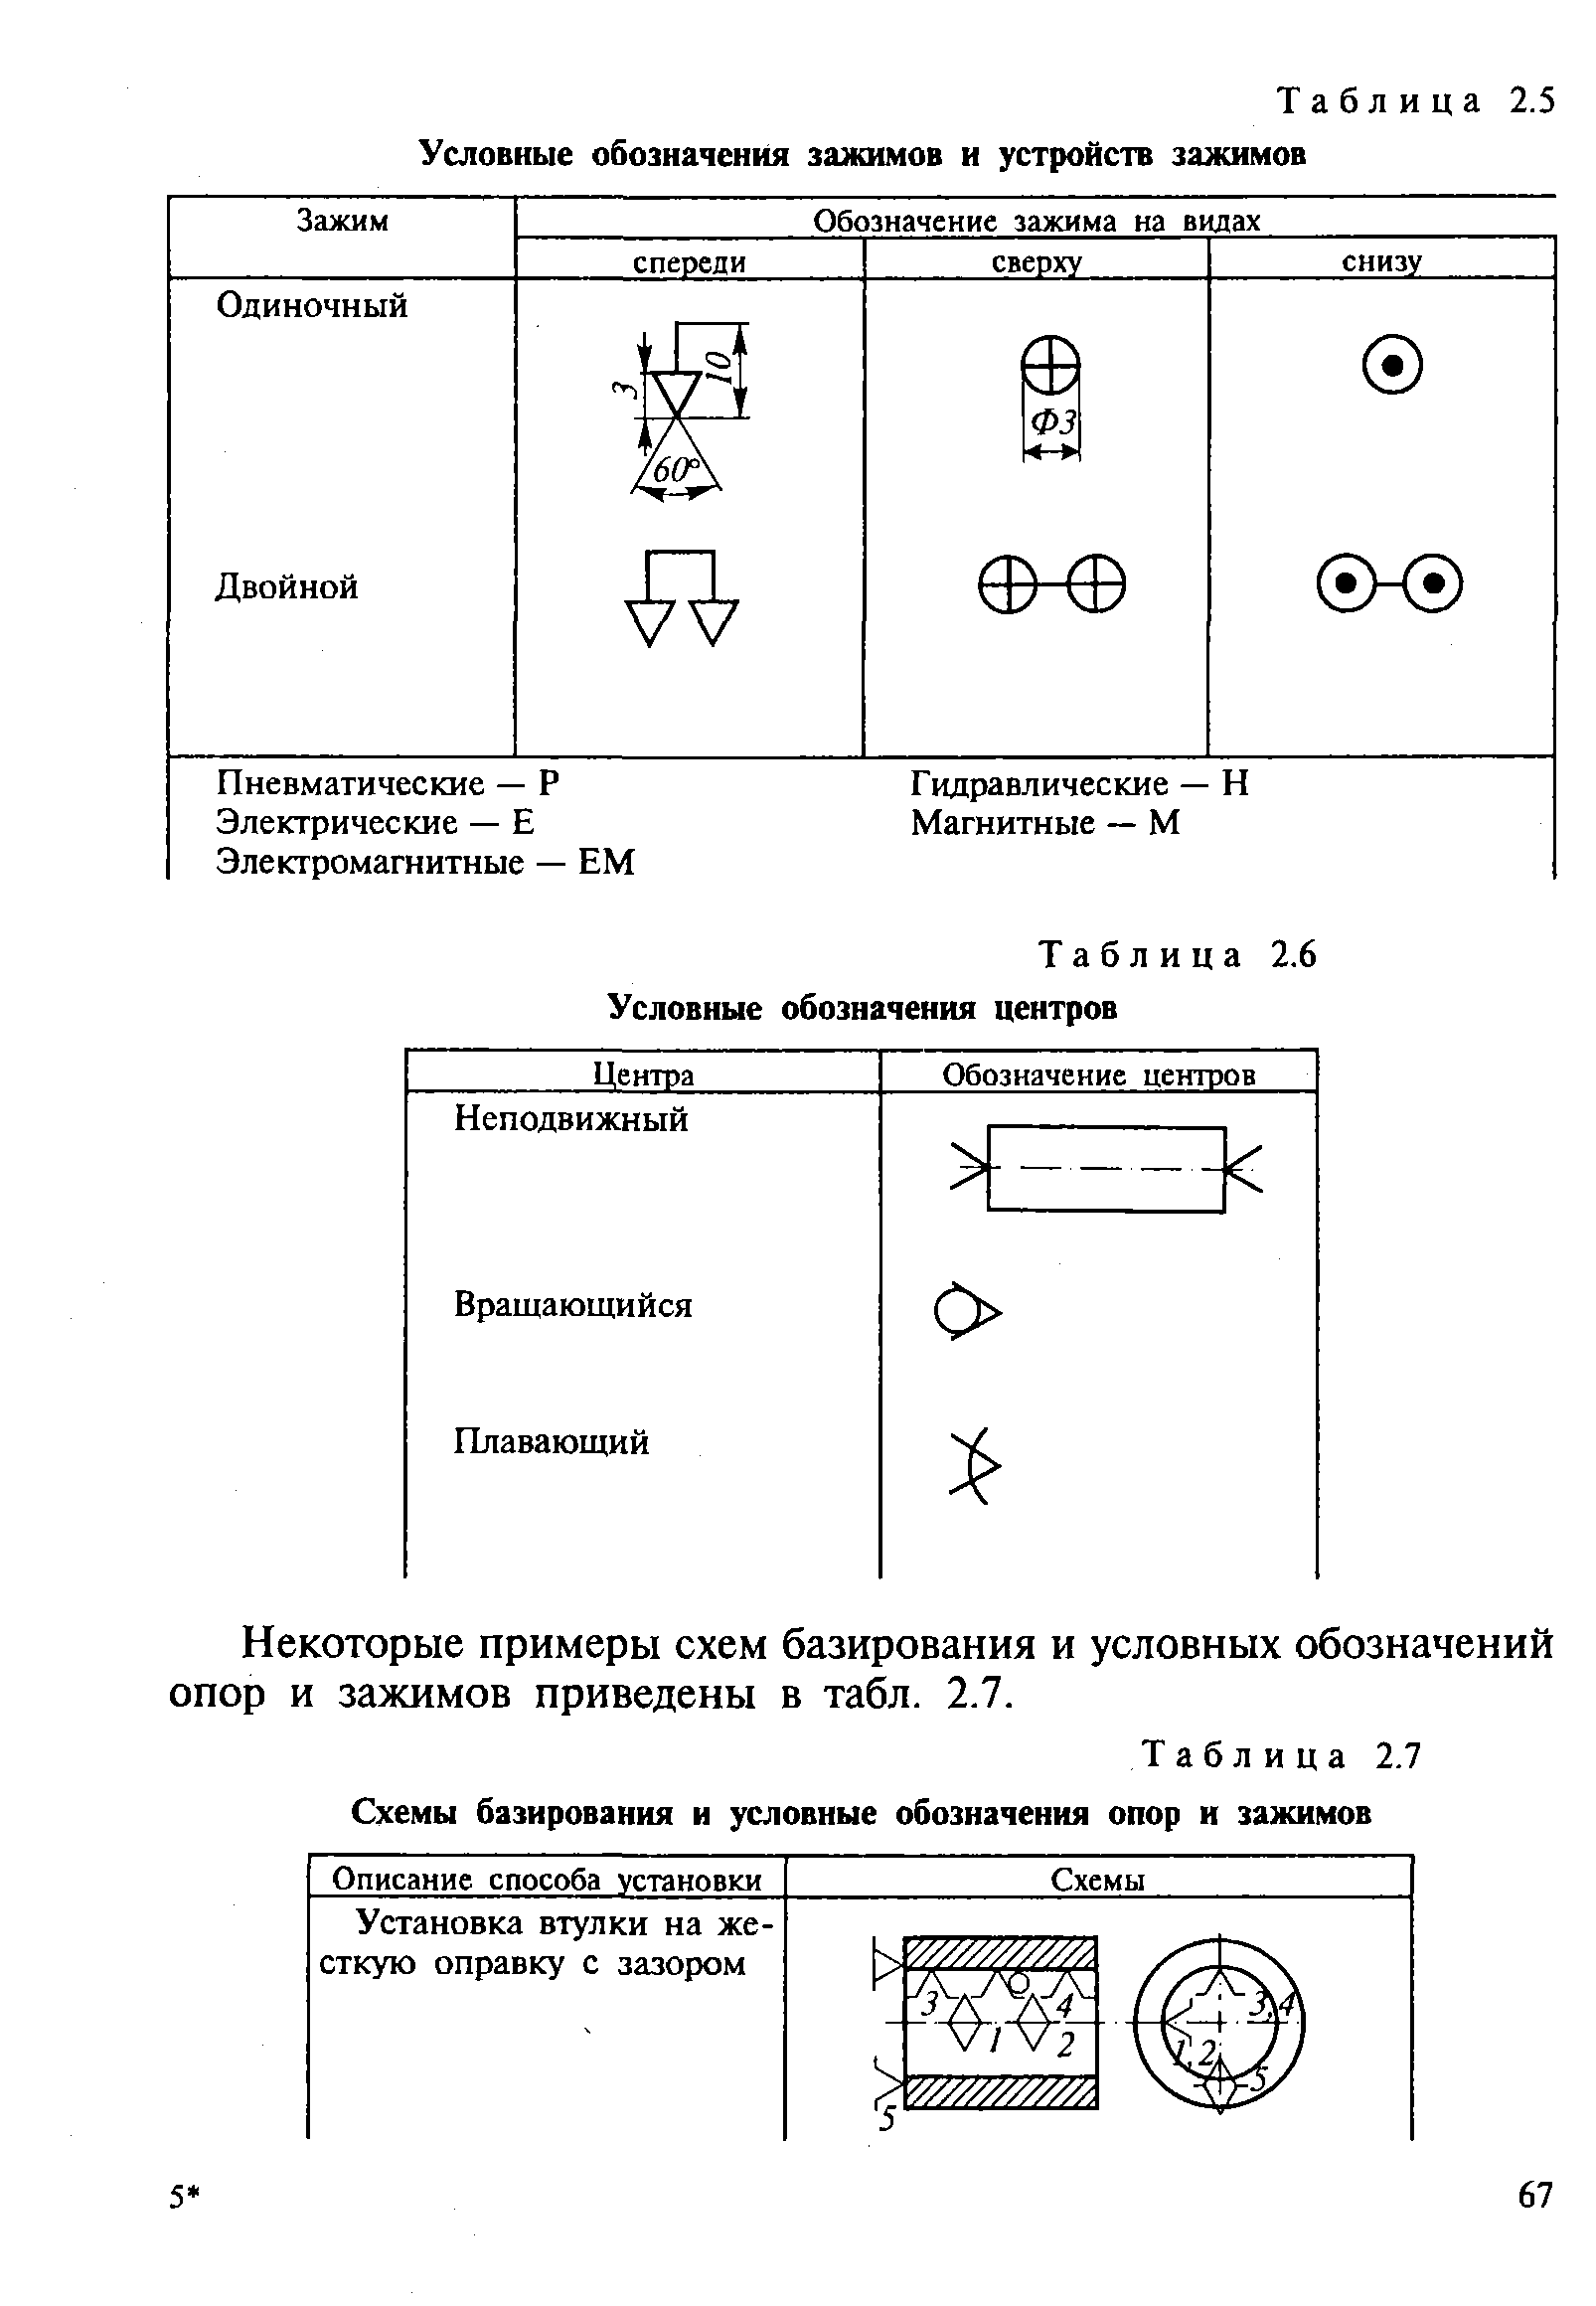 Таблица 2.7 Схемы базирования и условные обозначения опор и зажимов
